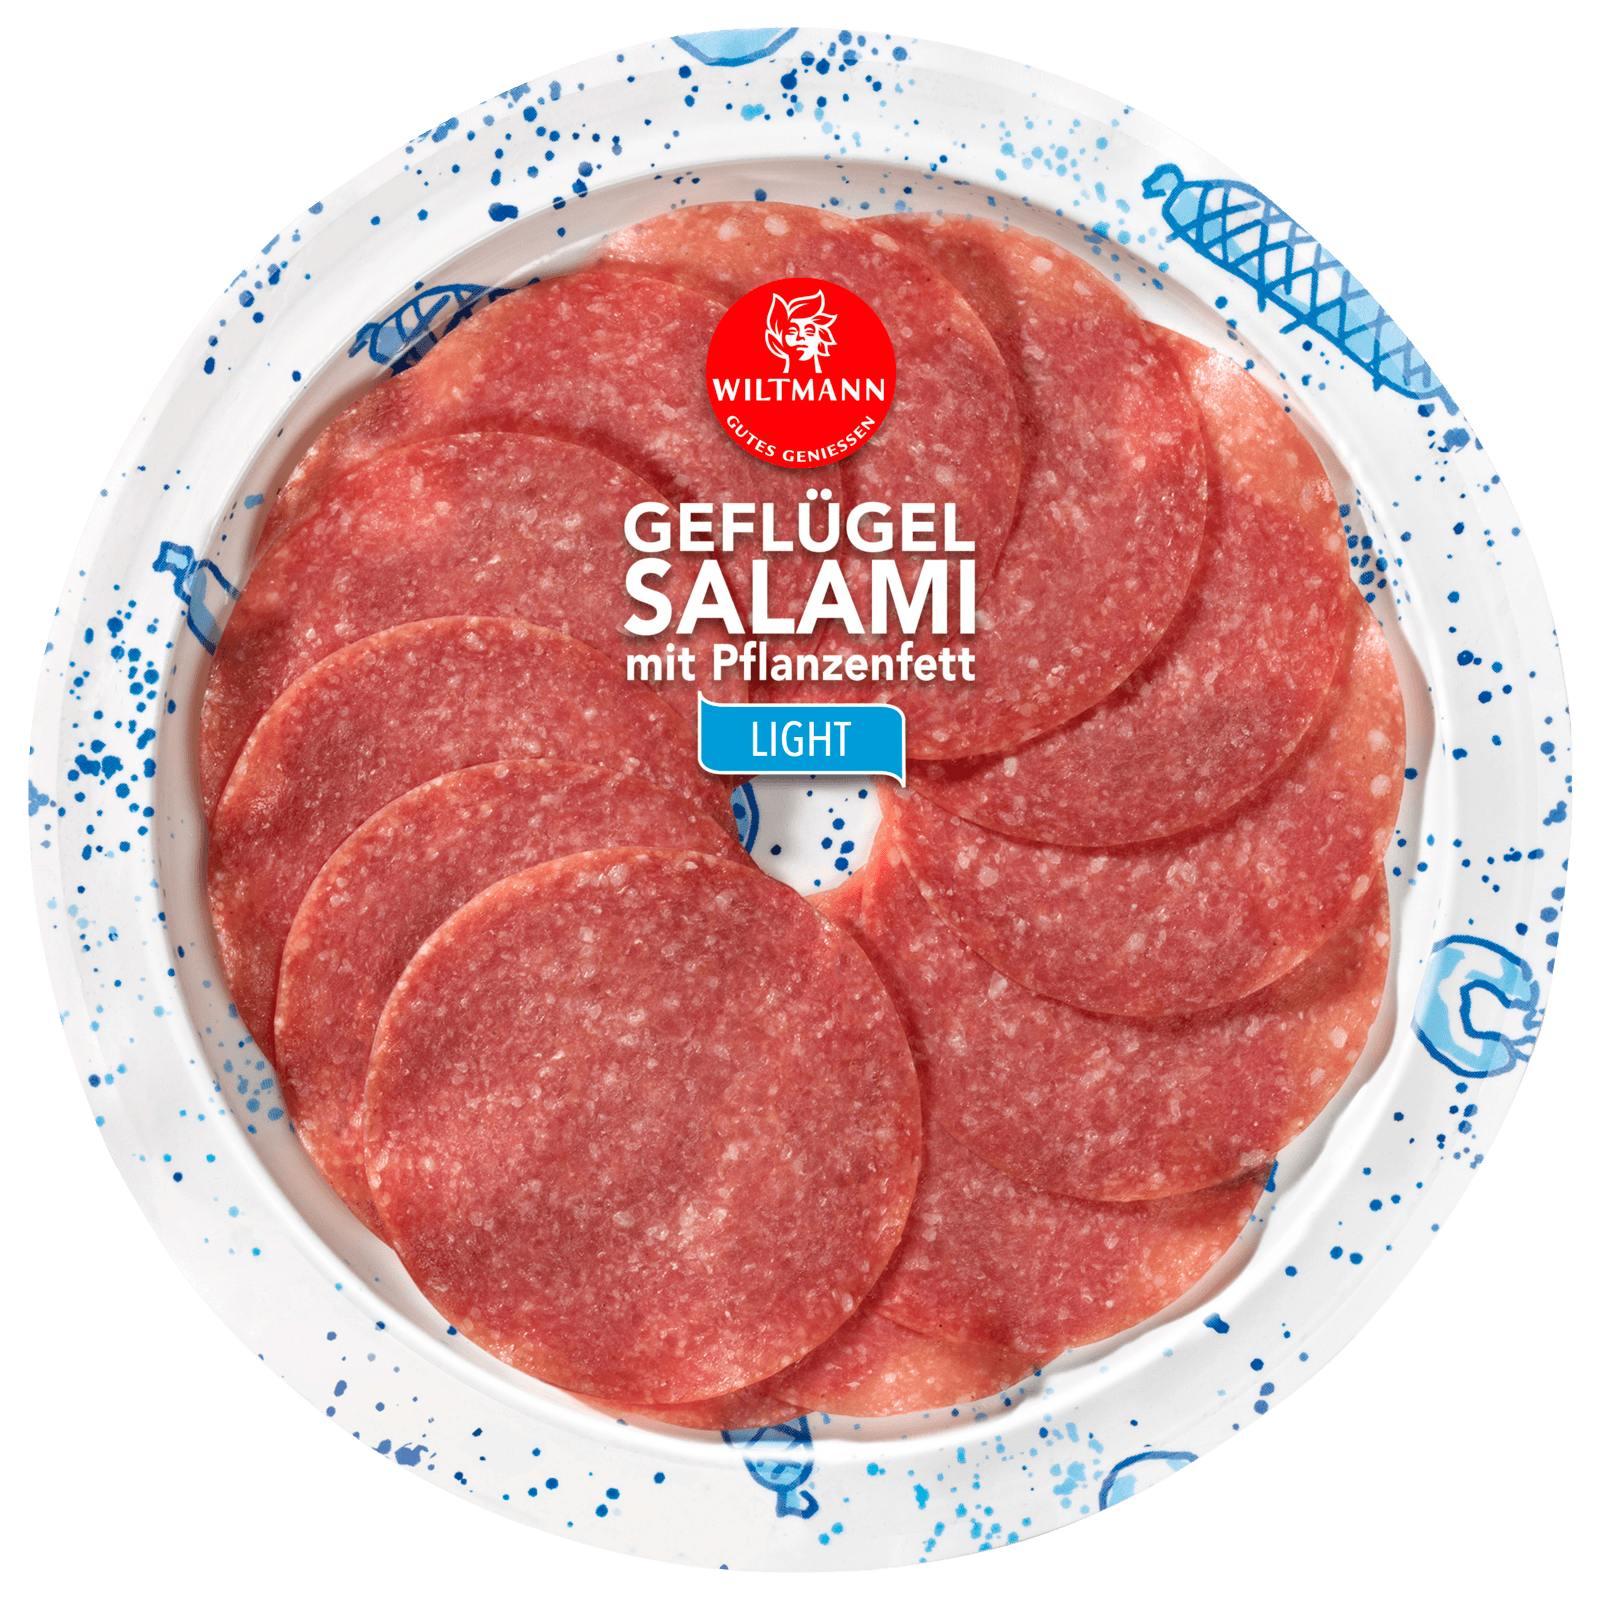 Wiltmann Geflügel-Salami light 50g bei REWE online bestellen!